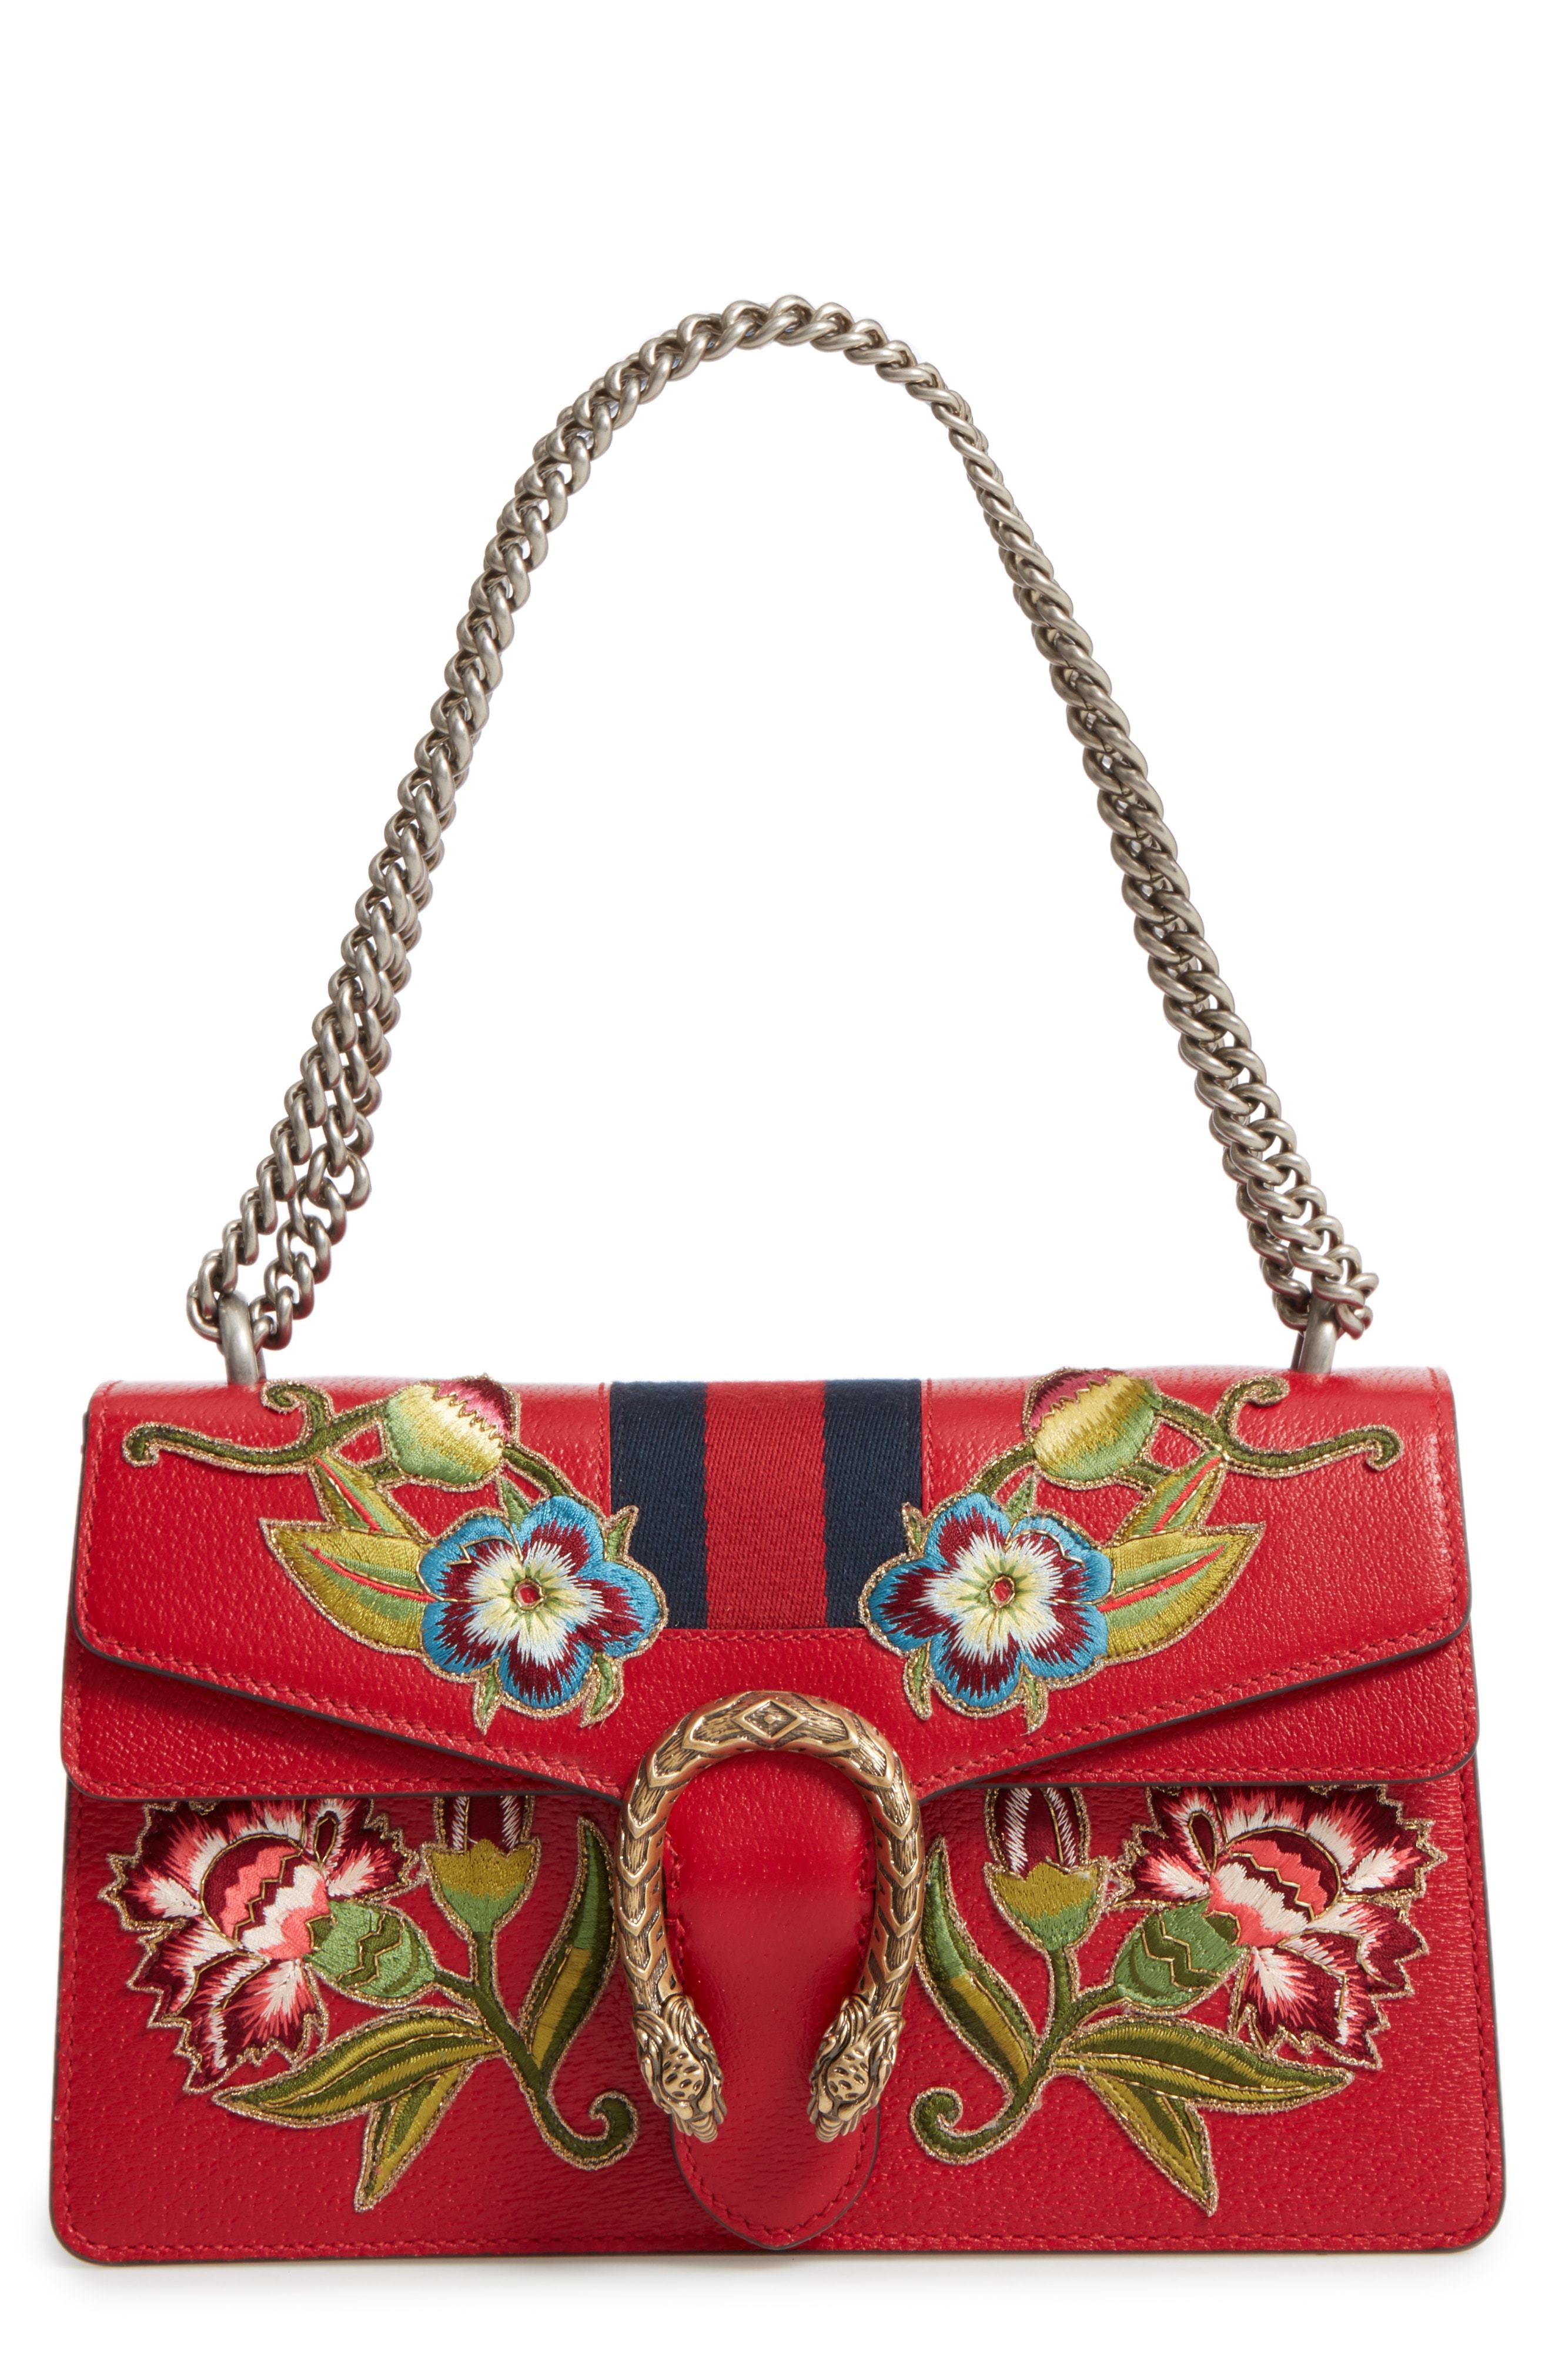 Gucci Dionysus Embroidered Leather Shoulder Bag, $3,800 | Nordstrom ...